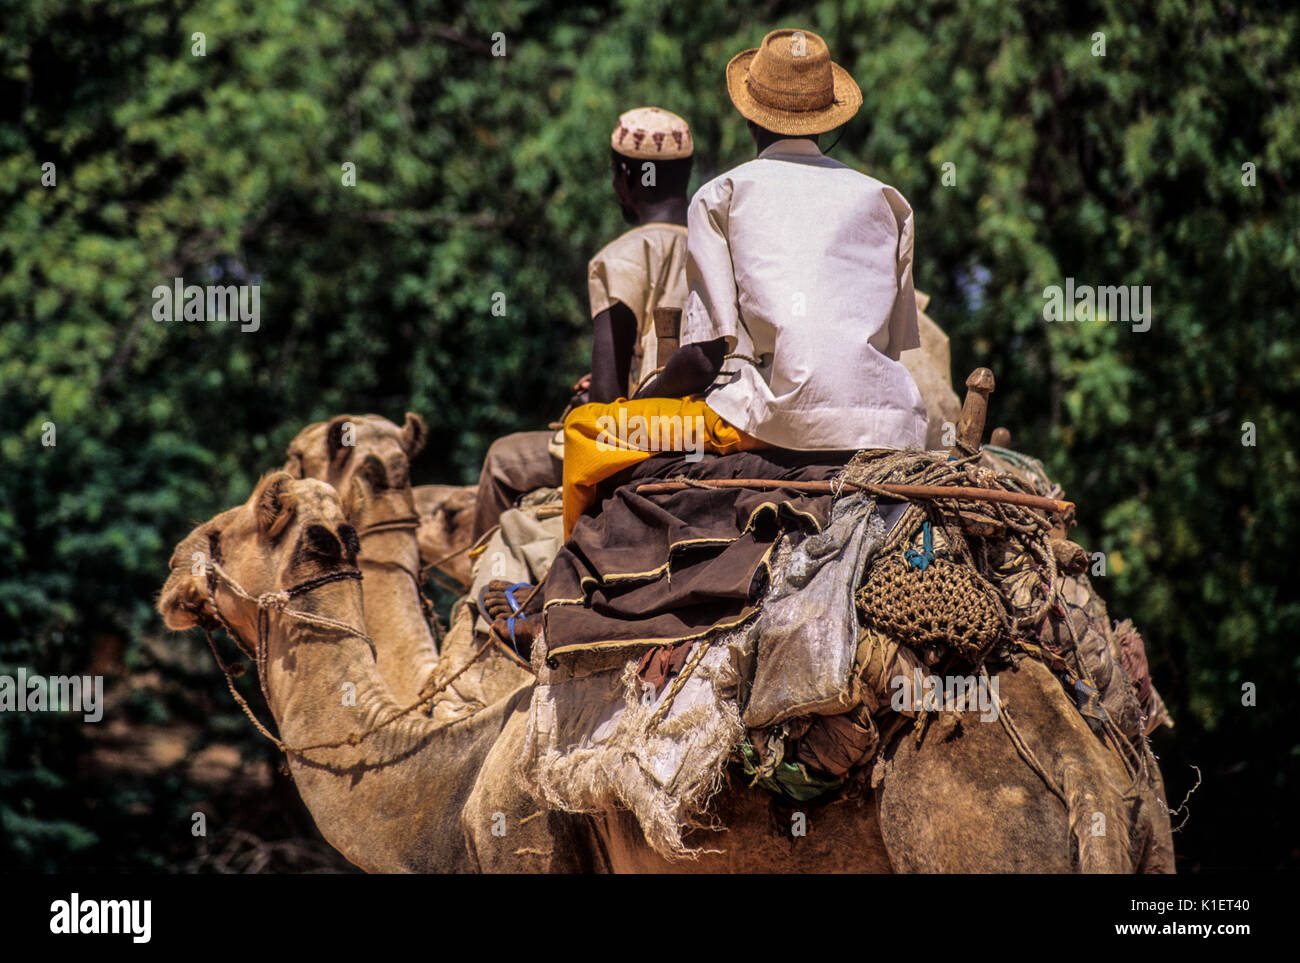 El Níger, en el oeste de África. Los jóvenes hombres de Níger en camellos. Silla de camello y un surtido de artículos desde la parte trasera. Foto de stock